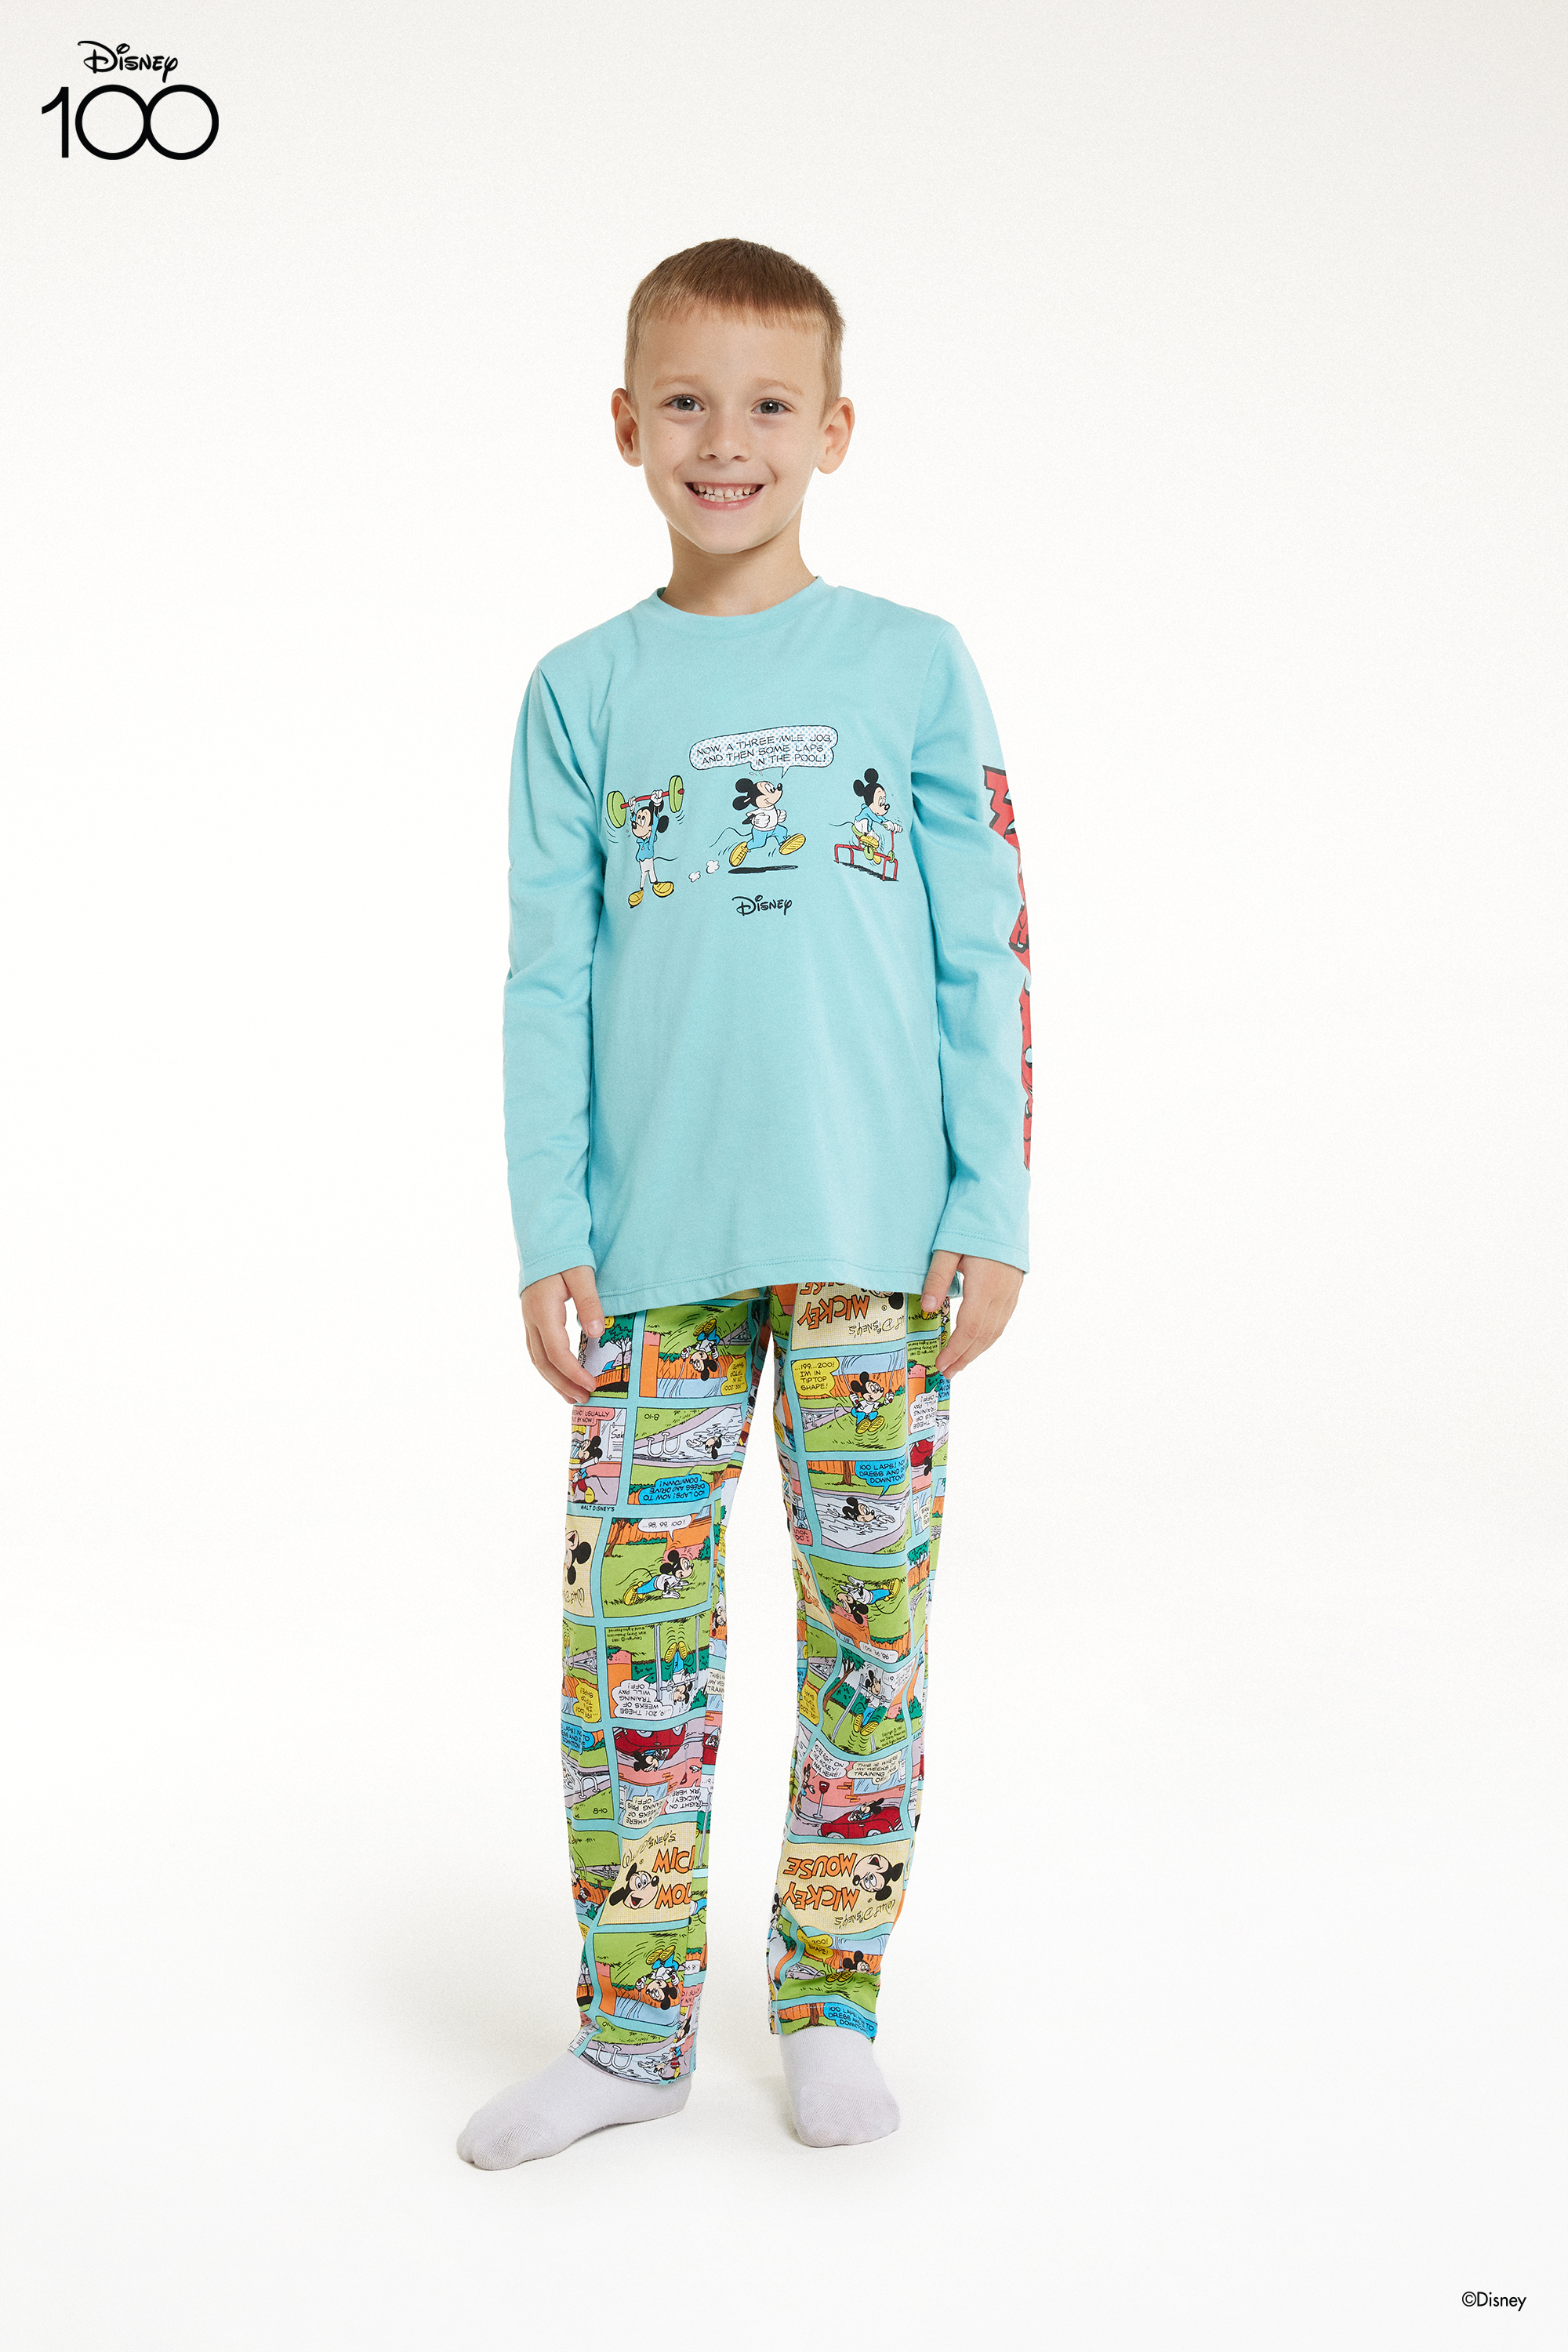 Boys’ Long Cotton Pyjamas with Disney 100 Print